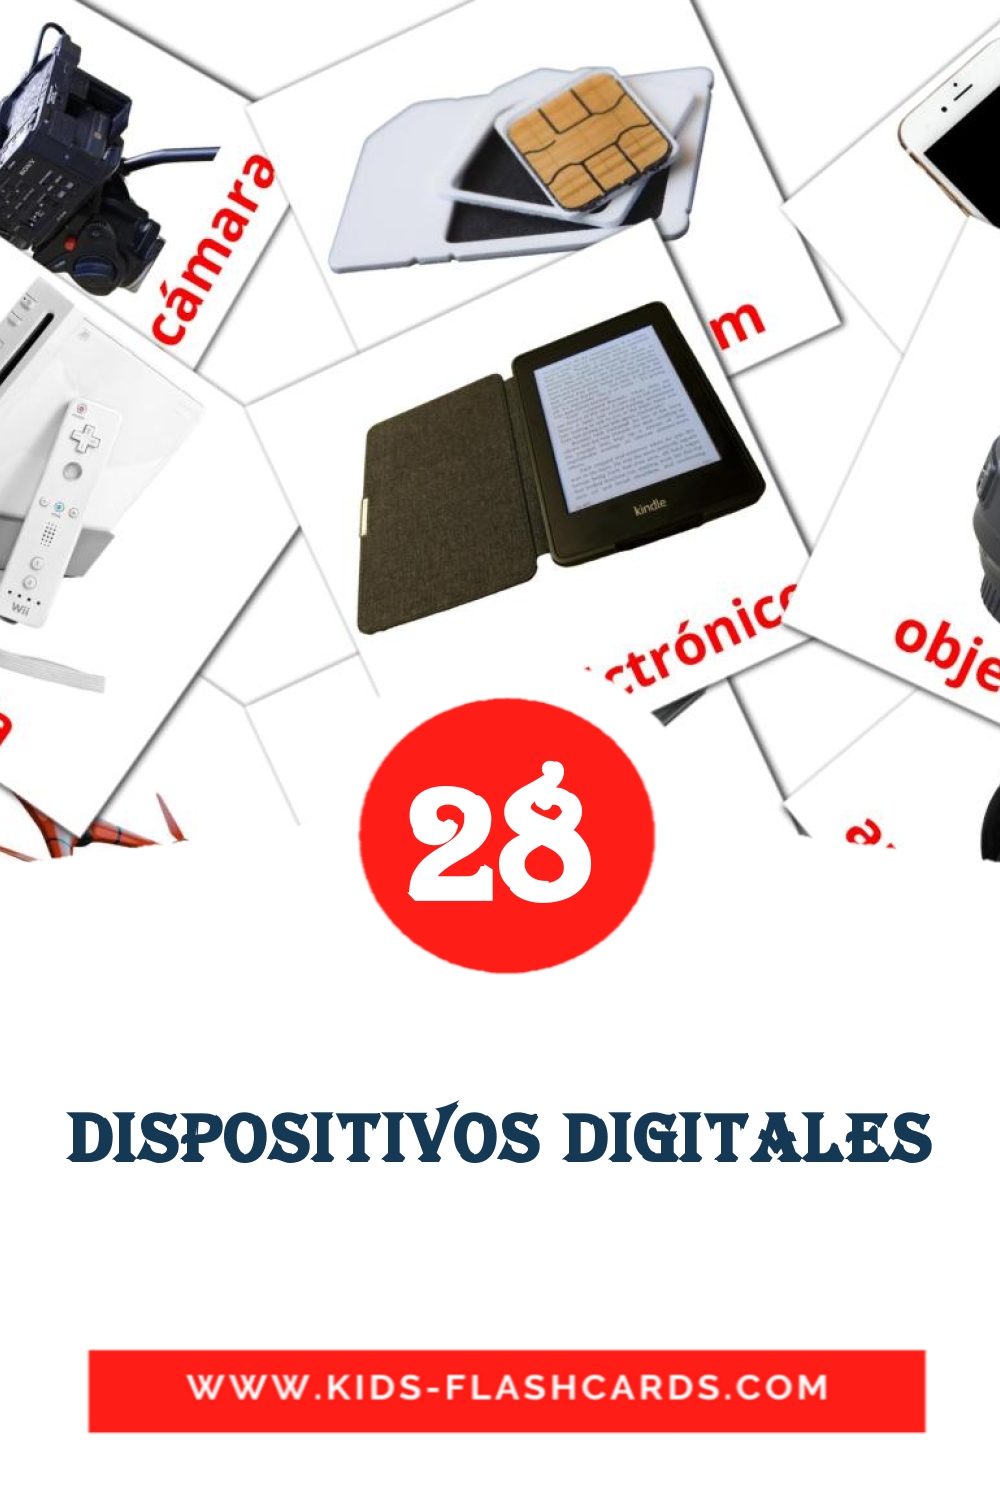 Dispositivos digitales на испанском для Детского Сада (29 карточек)